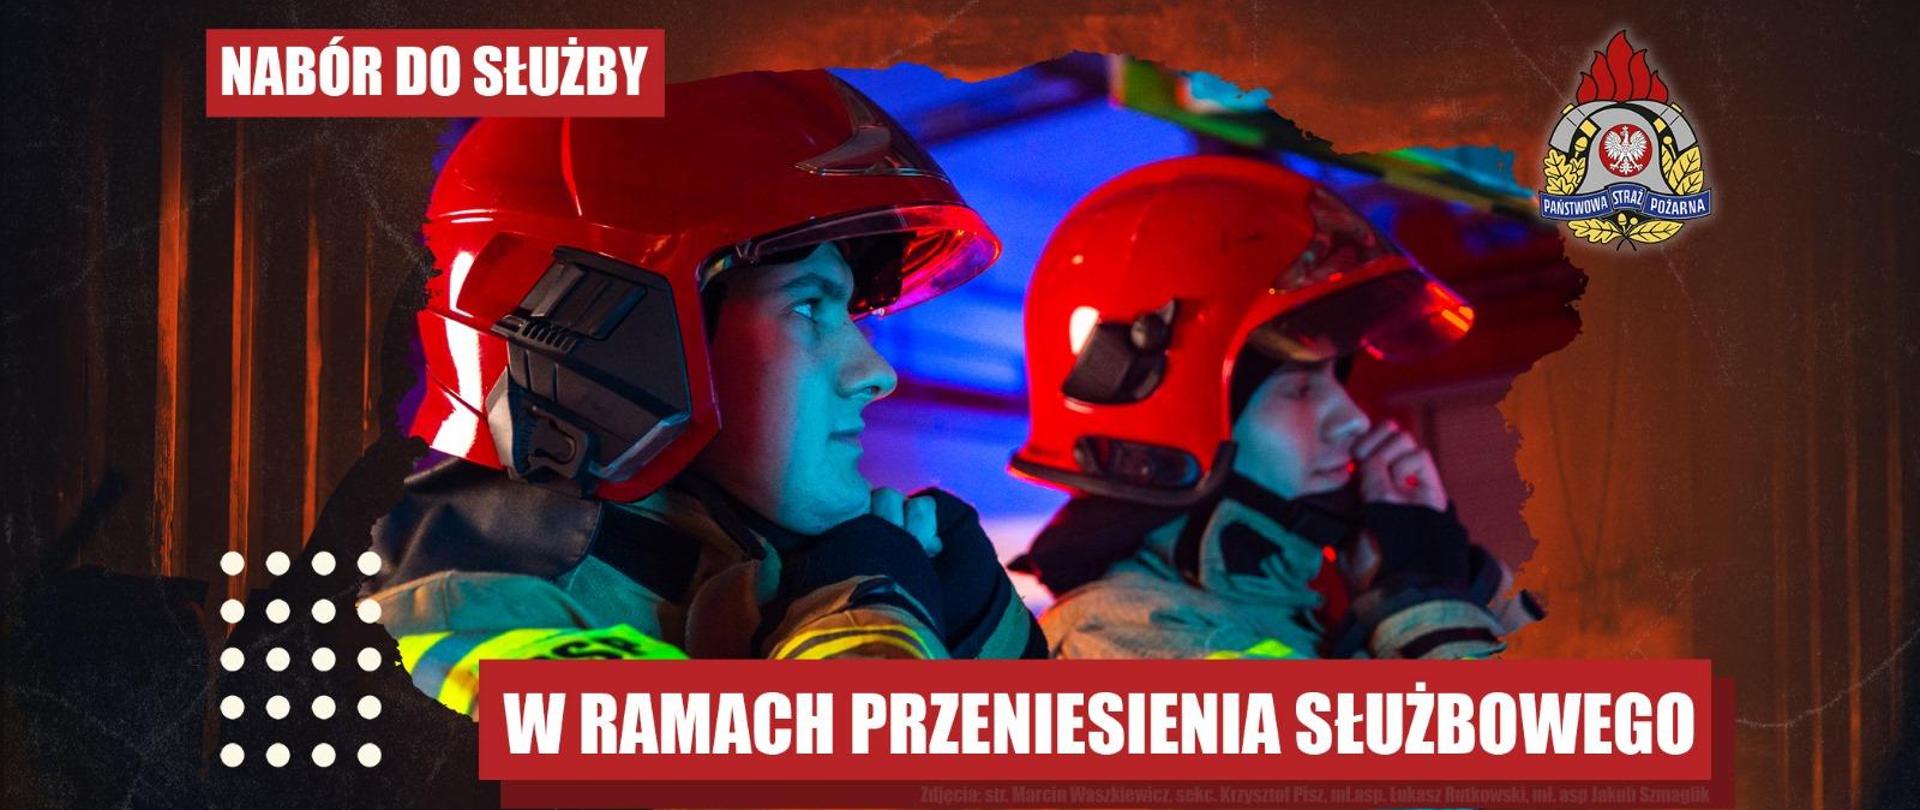 Nabór do służby w Wydziale Technicznym KW PSP we Wrocławiu na zasadach przeniesienia służbowego.